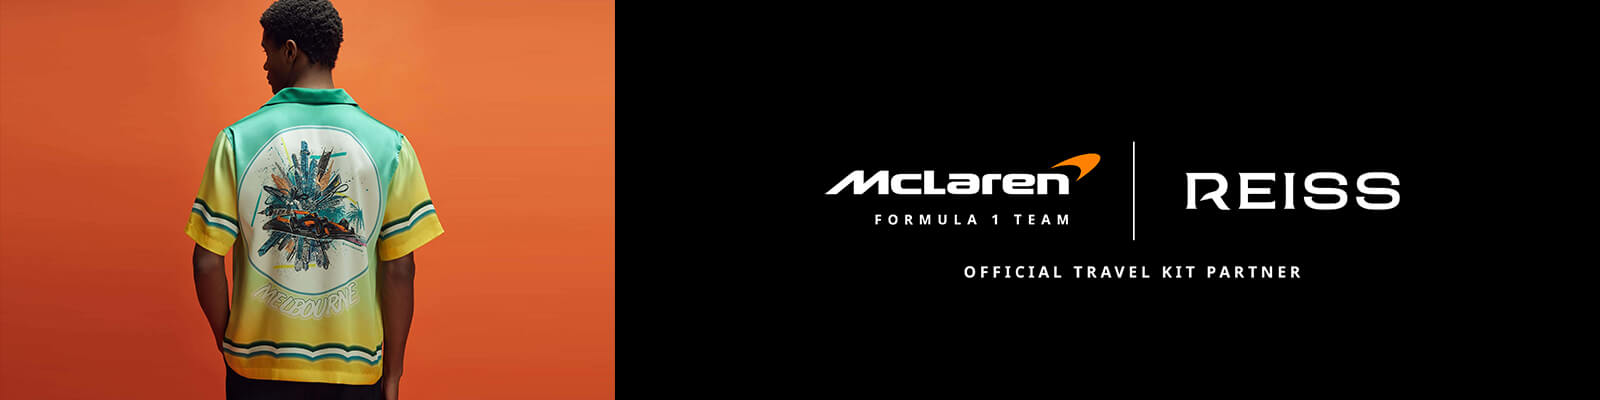 McLaren_Coming_Soon_01_Hero_v2